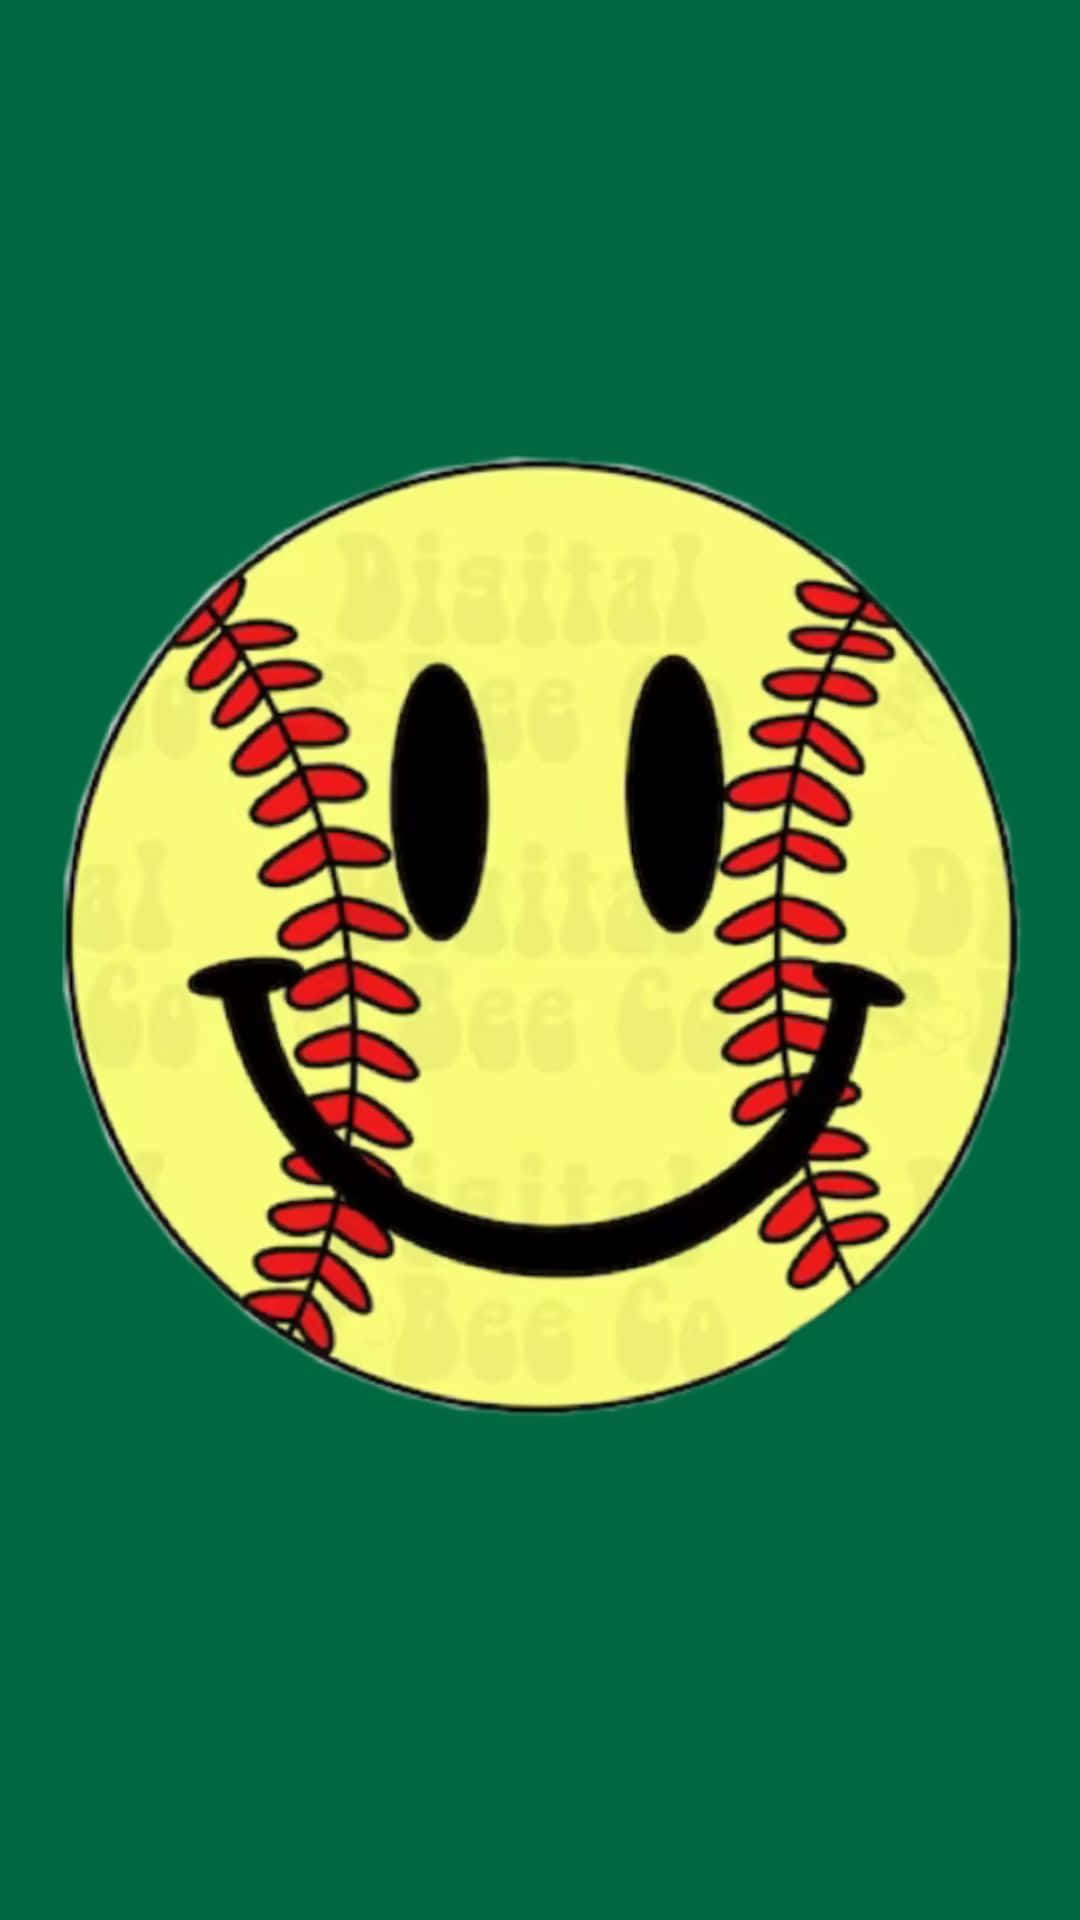 Smiley Face Softball Aesthetic.jpg Wallpaper